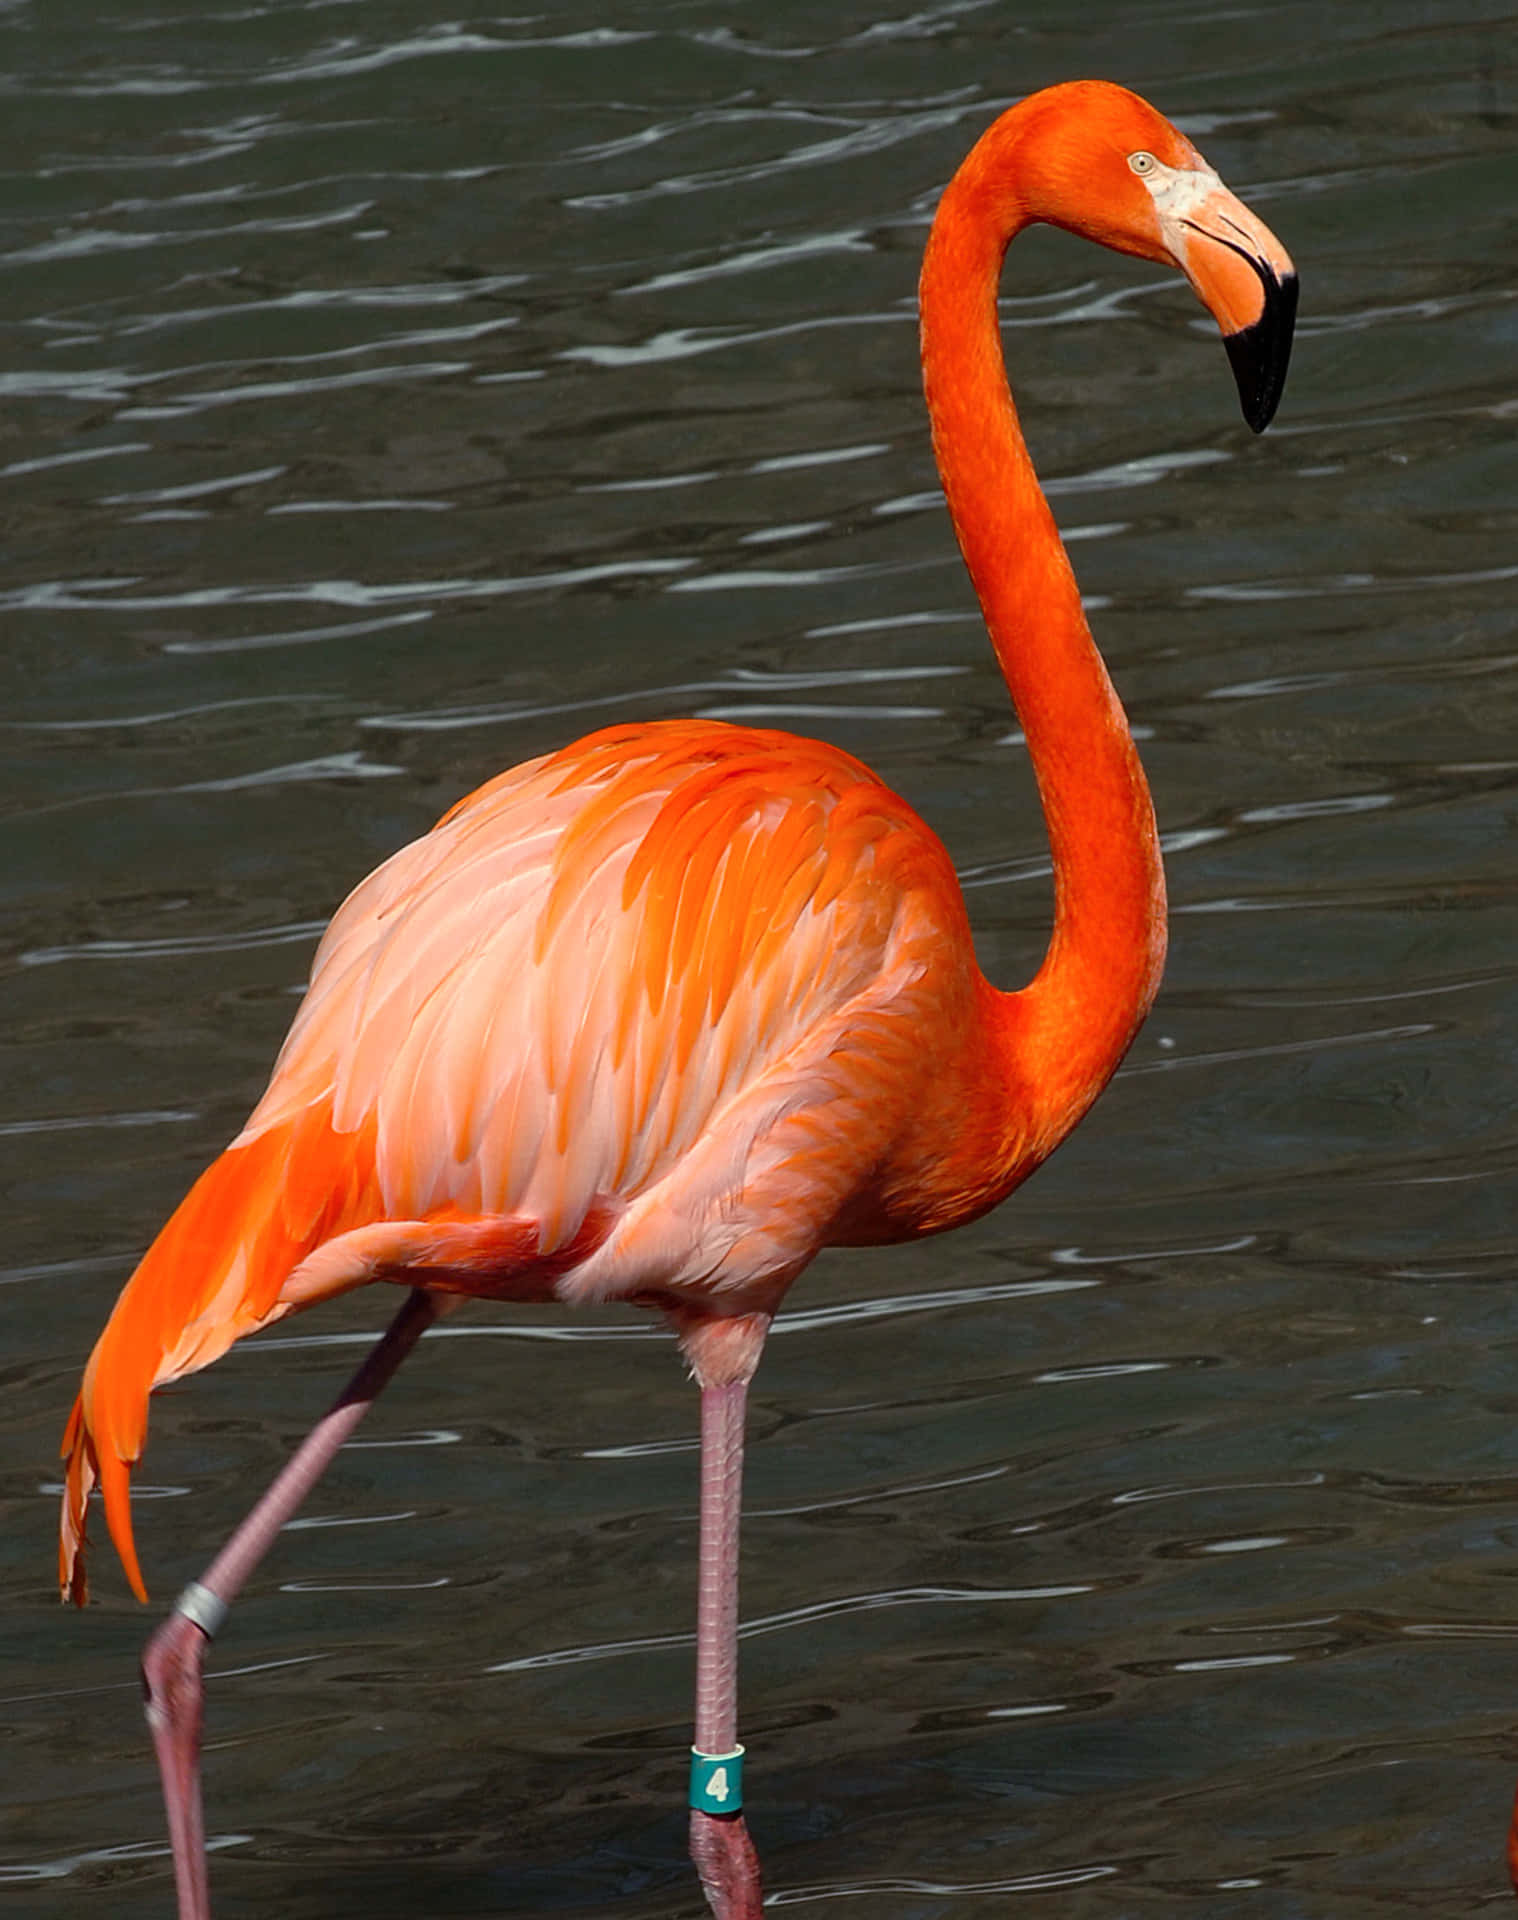 Unhermoso Flamingo Rosa Se Yergue Con Gracia En El Agua En Un Día Brillante Y Soleado.